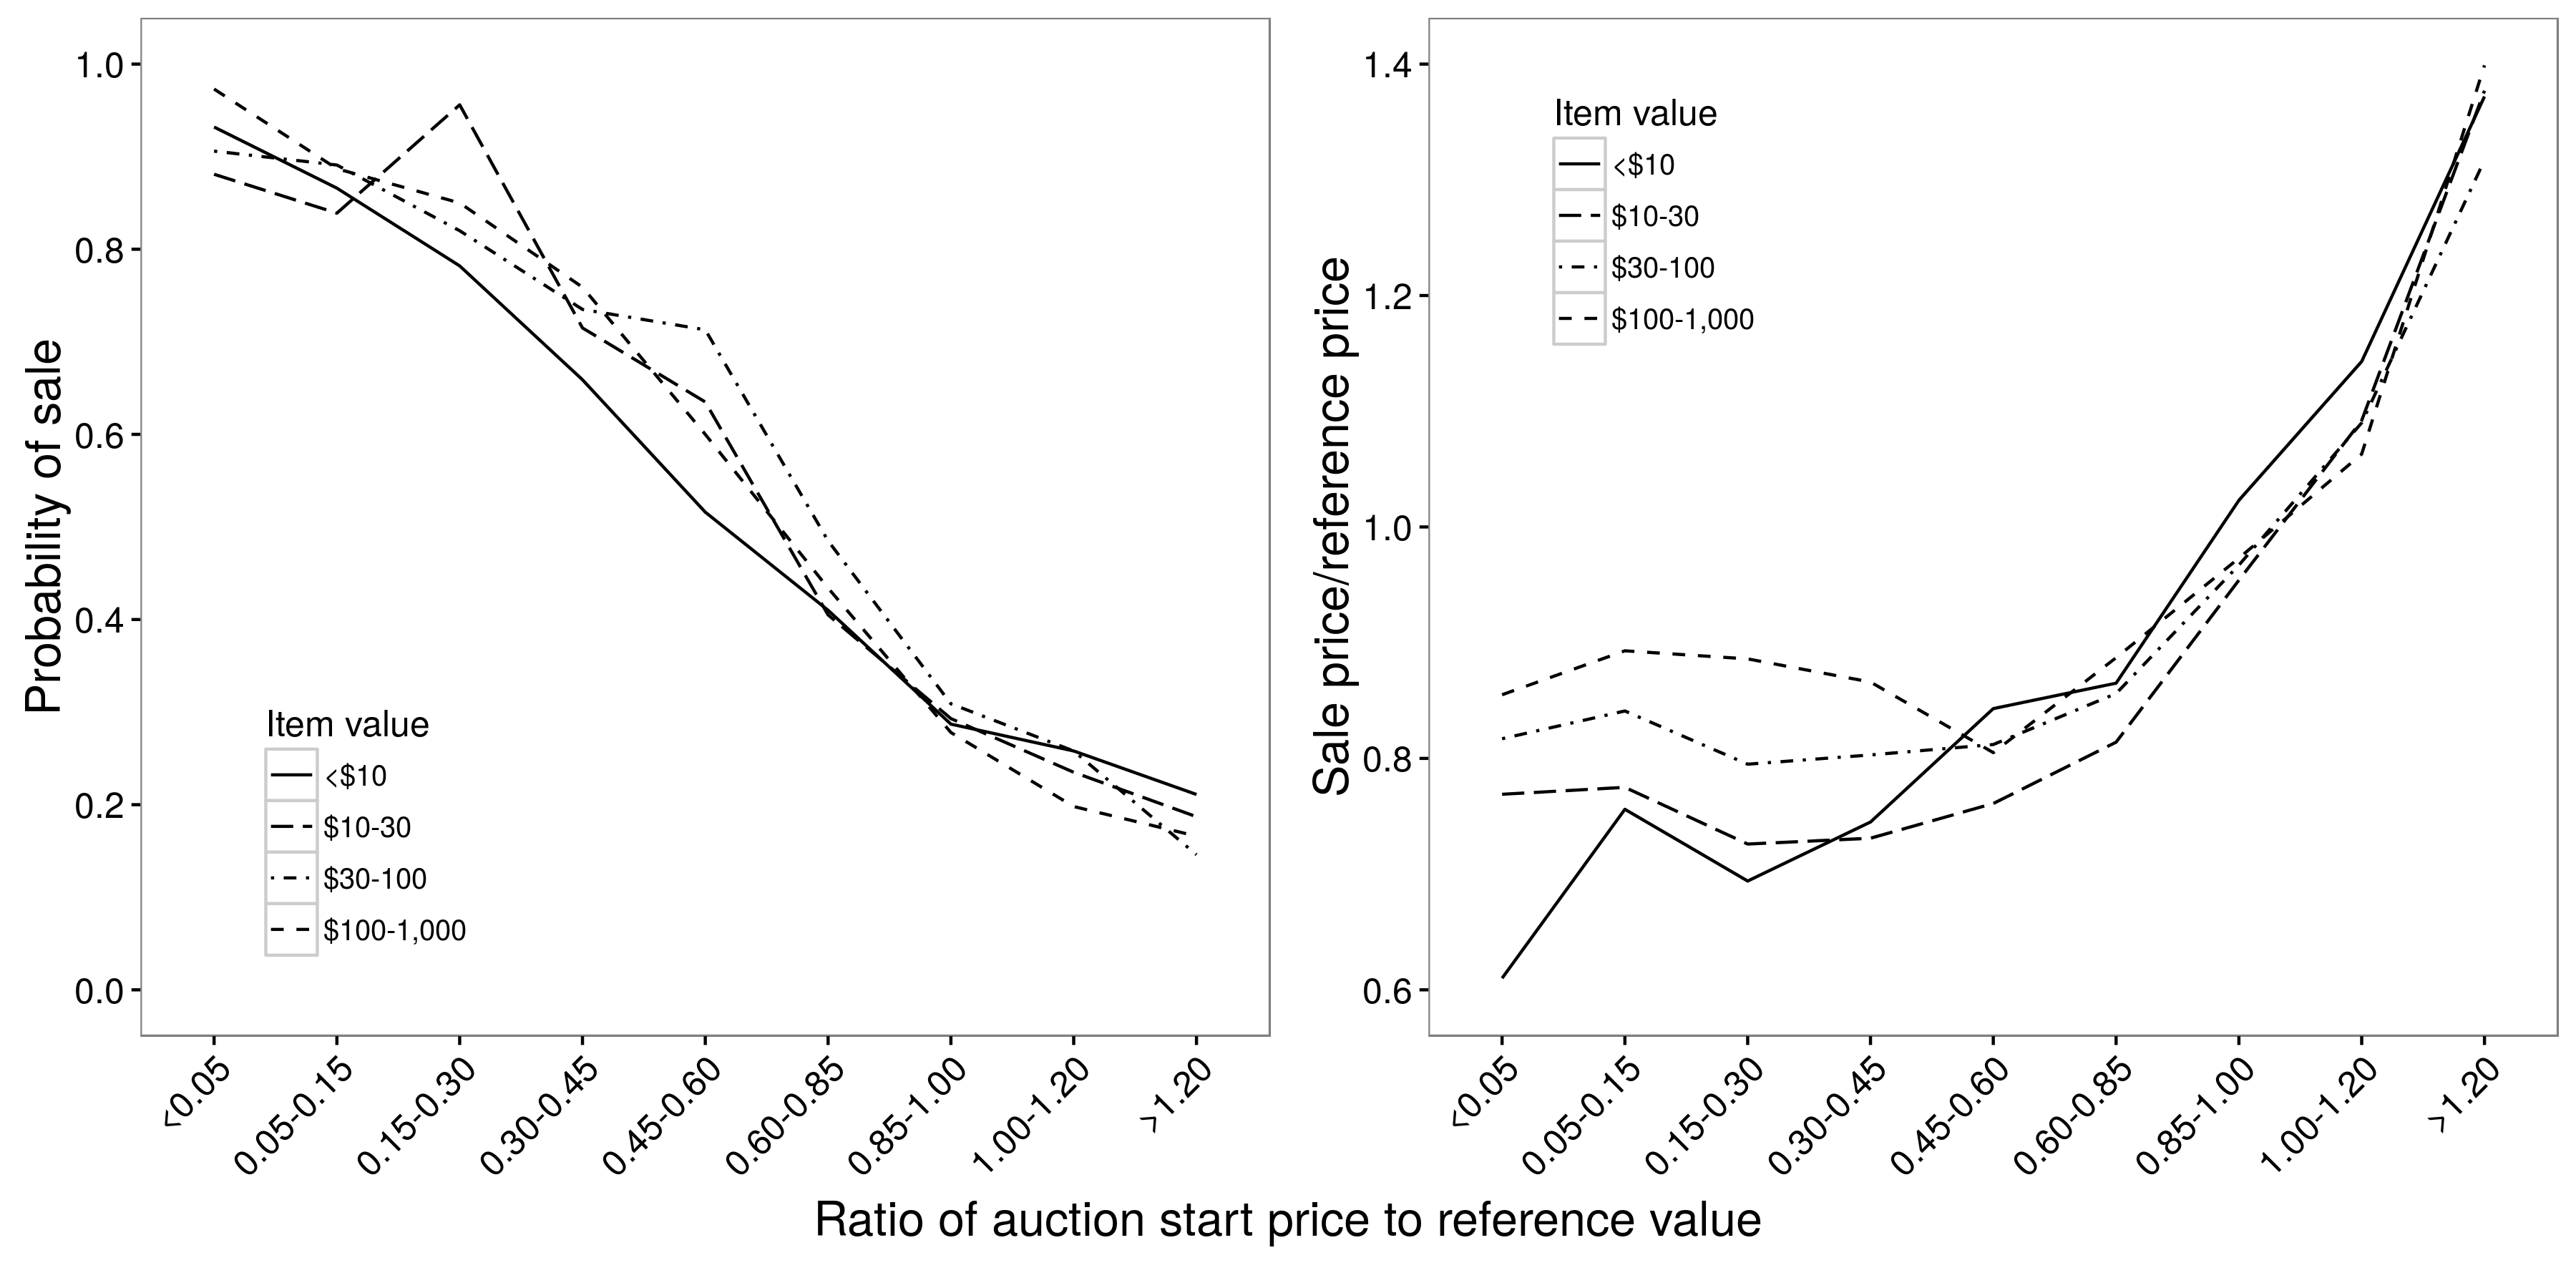 Рисунок 2.9: Взаимосвязь между стартовой ценой аукциона и вероятностью продажи (а) и продажной ценой (б). Существует примерно линейная зависимость между стартовой ценой и вероятностью продажи, но нелинейная зависимость между стартовой ценой и ценой продажи; для стартовых цен от 0,05 до 0,85, стартовая цена очень мало влияет на цену продажи. В обоих случаях отношения в основном не зависят от значения элемента. Адаптировано из Einav et al. (2015), рисунки 4a и 4b.